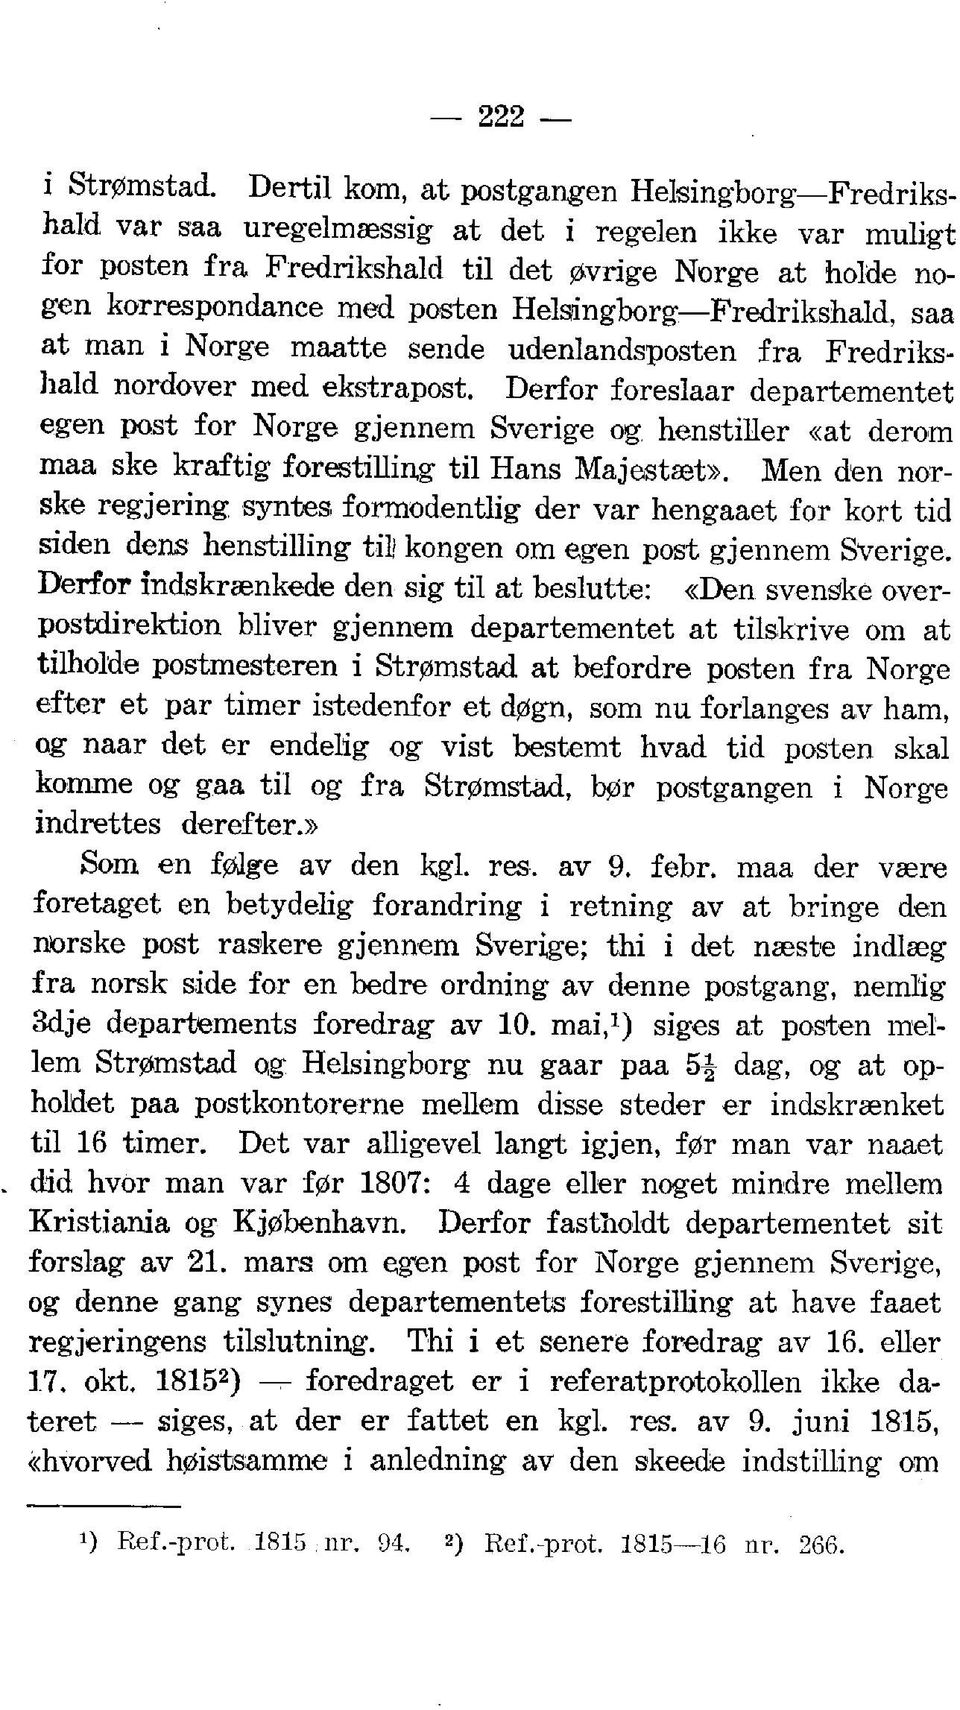 Helsingborg Fredrikshald, saa at man i Norge maatte sende udenlandsposten fra Fredrikshald nordover med ekstrapost.